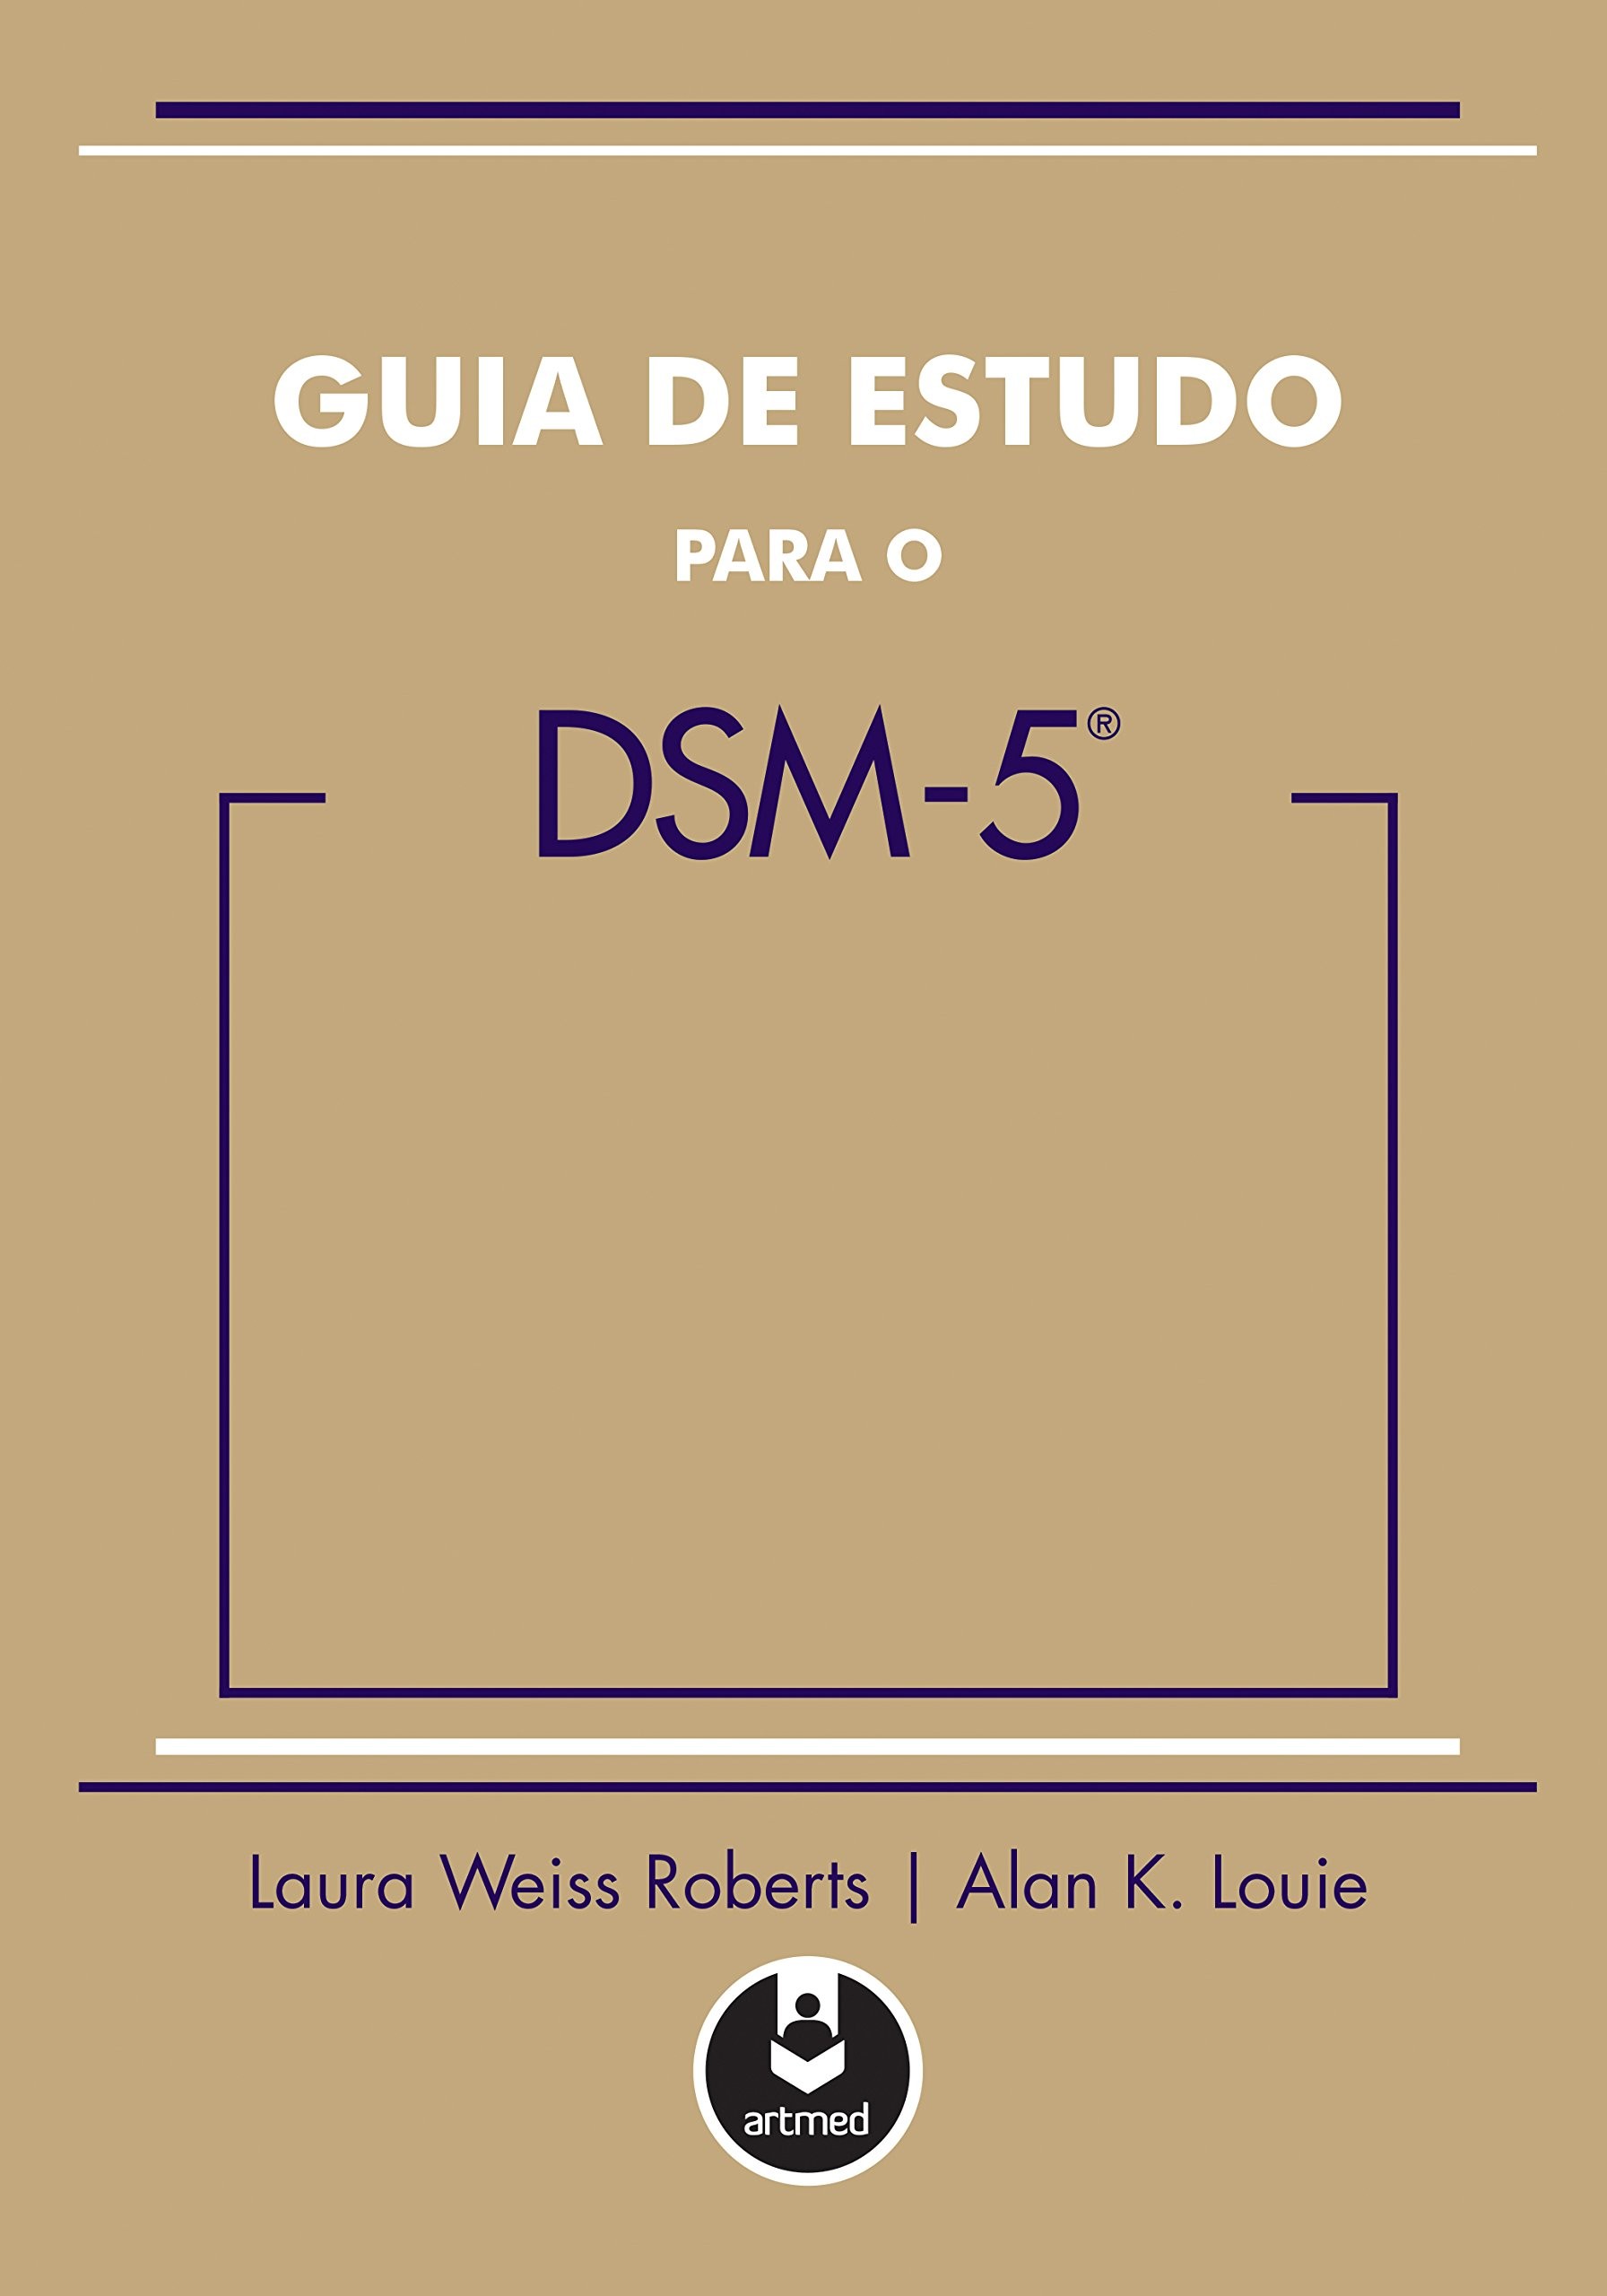 GUIA DE ESTUDO PARA O DSM-5